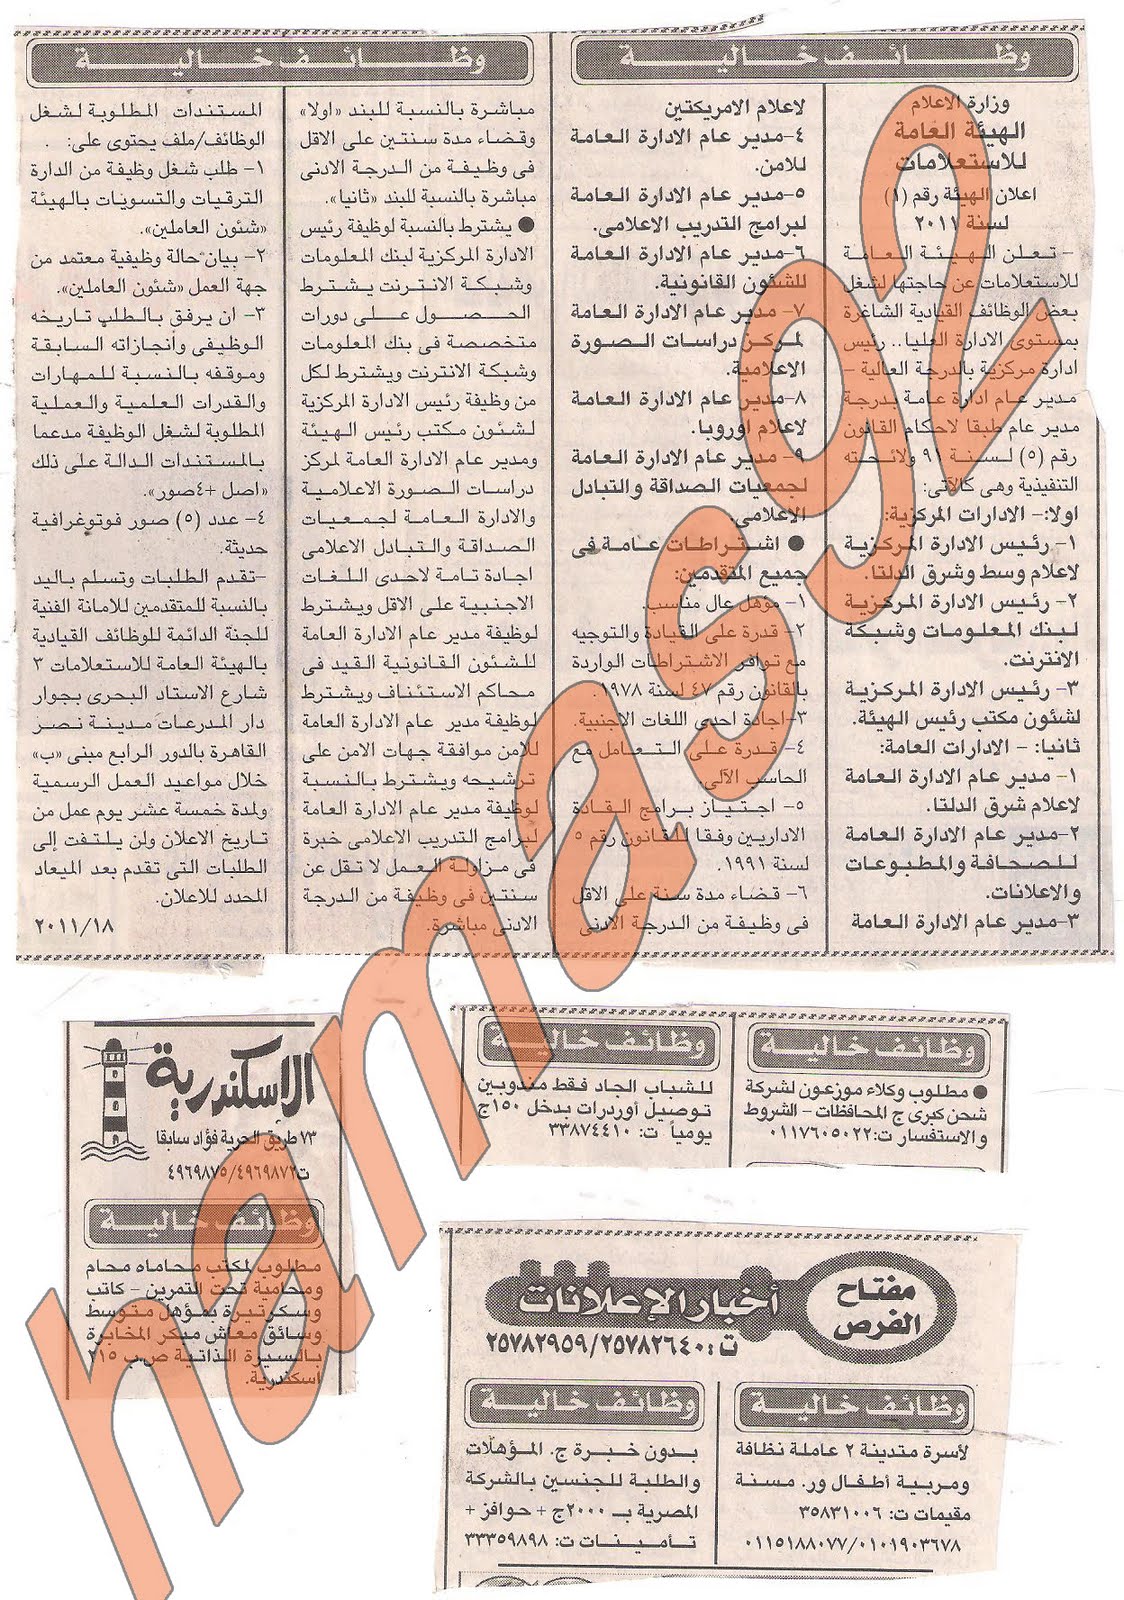 وظائف خالية من جريدة الاخبار الاحد 31 يوليو 2011 Picture+001